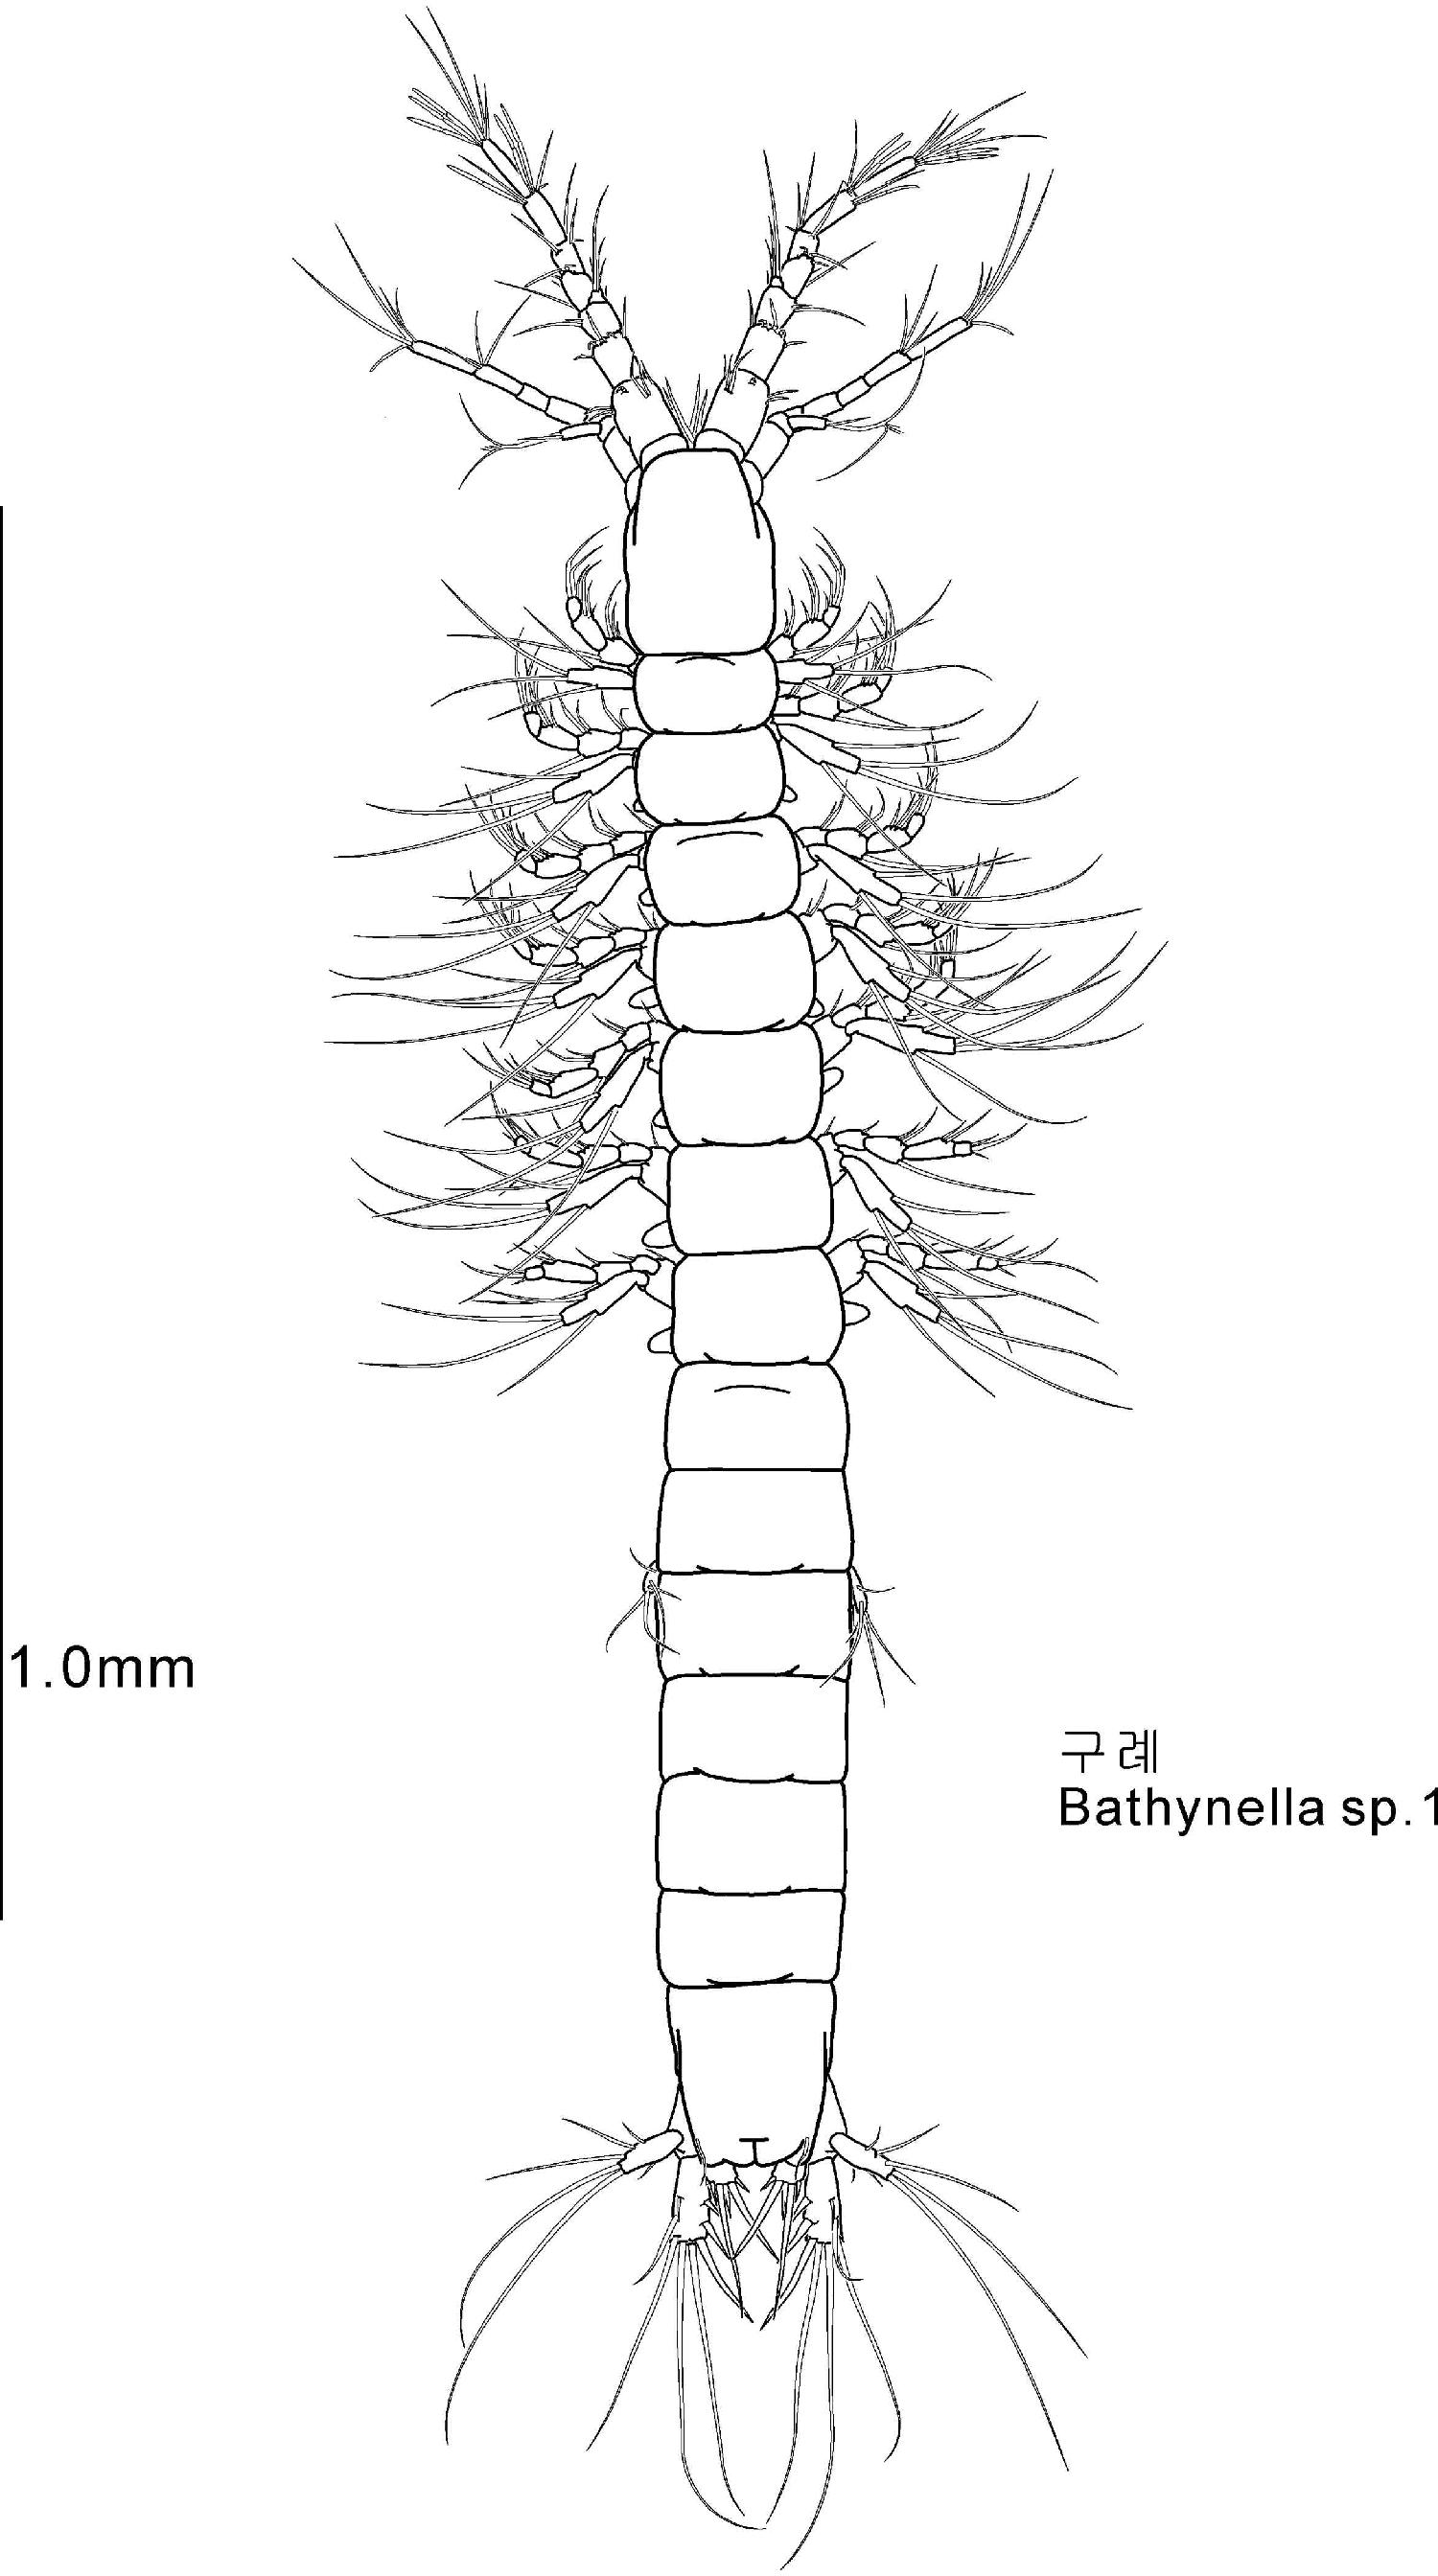 Bathynella n. sp. 2